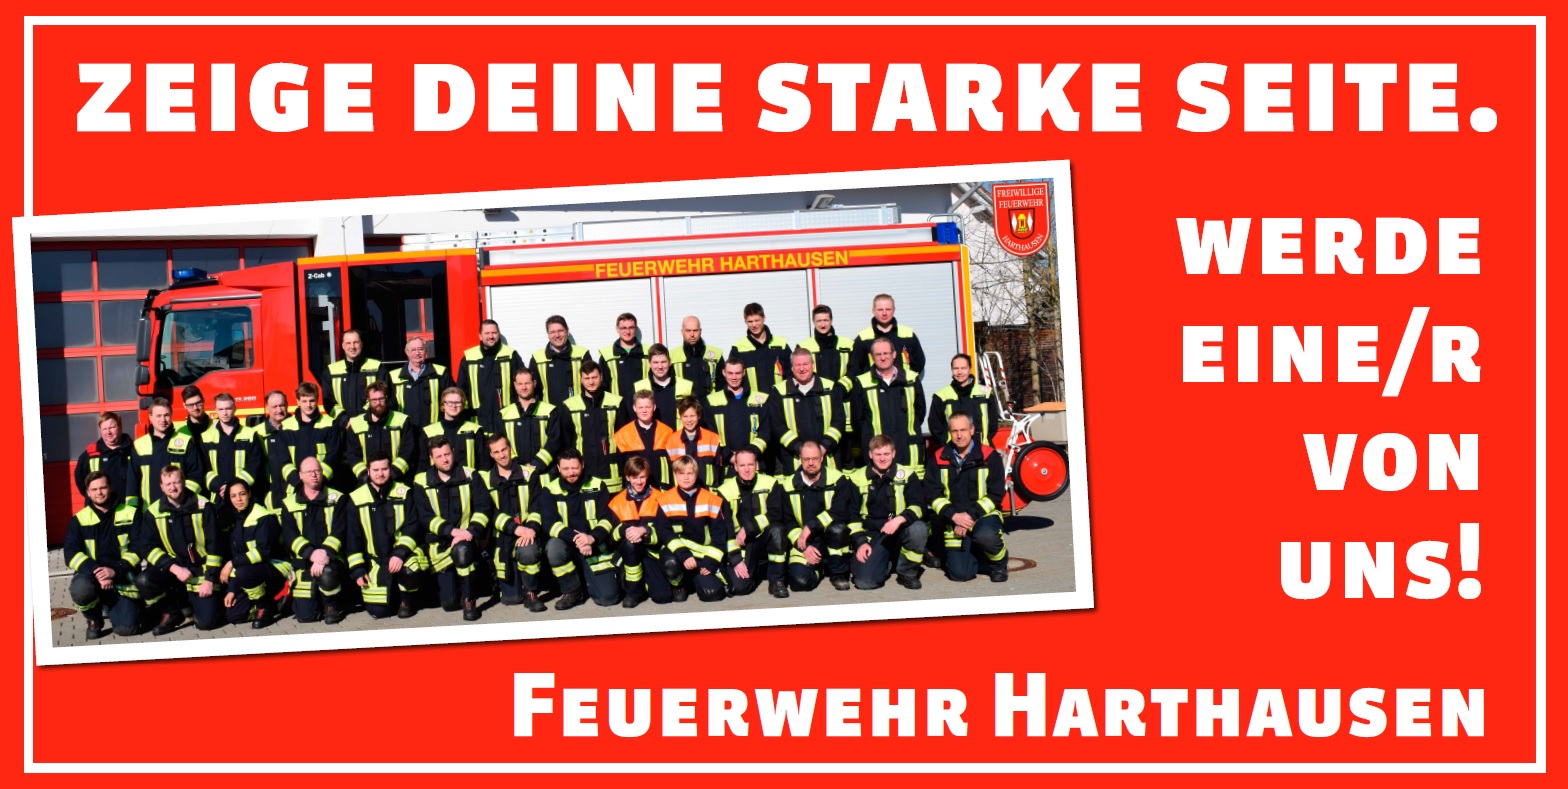 (c) Feuerwehr-harthausen.com